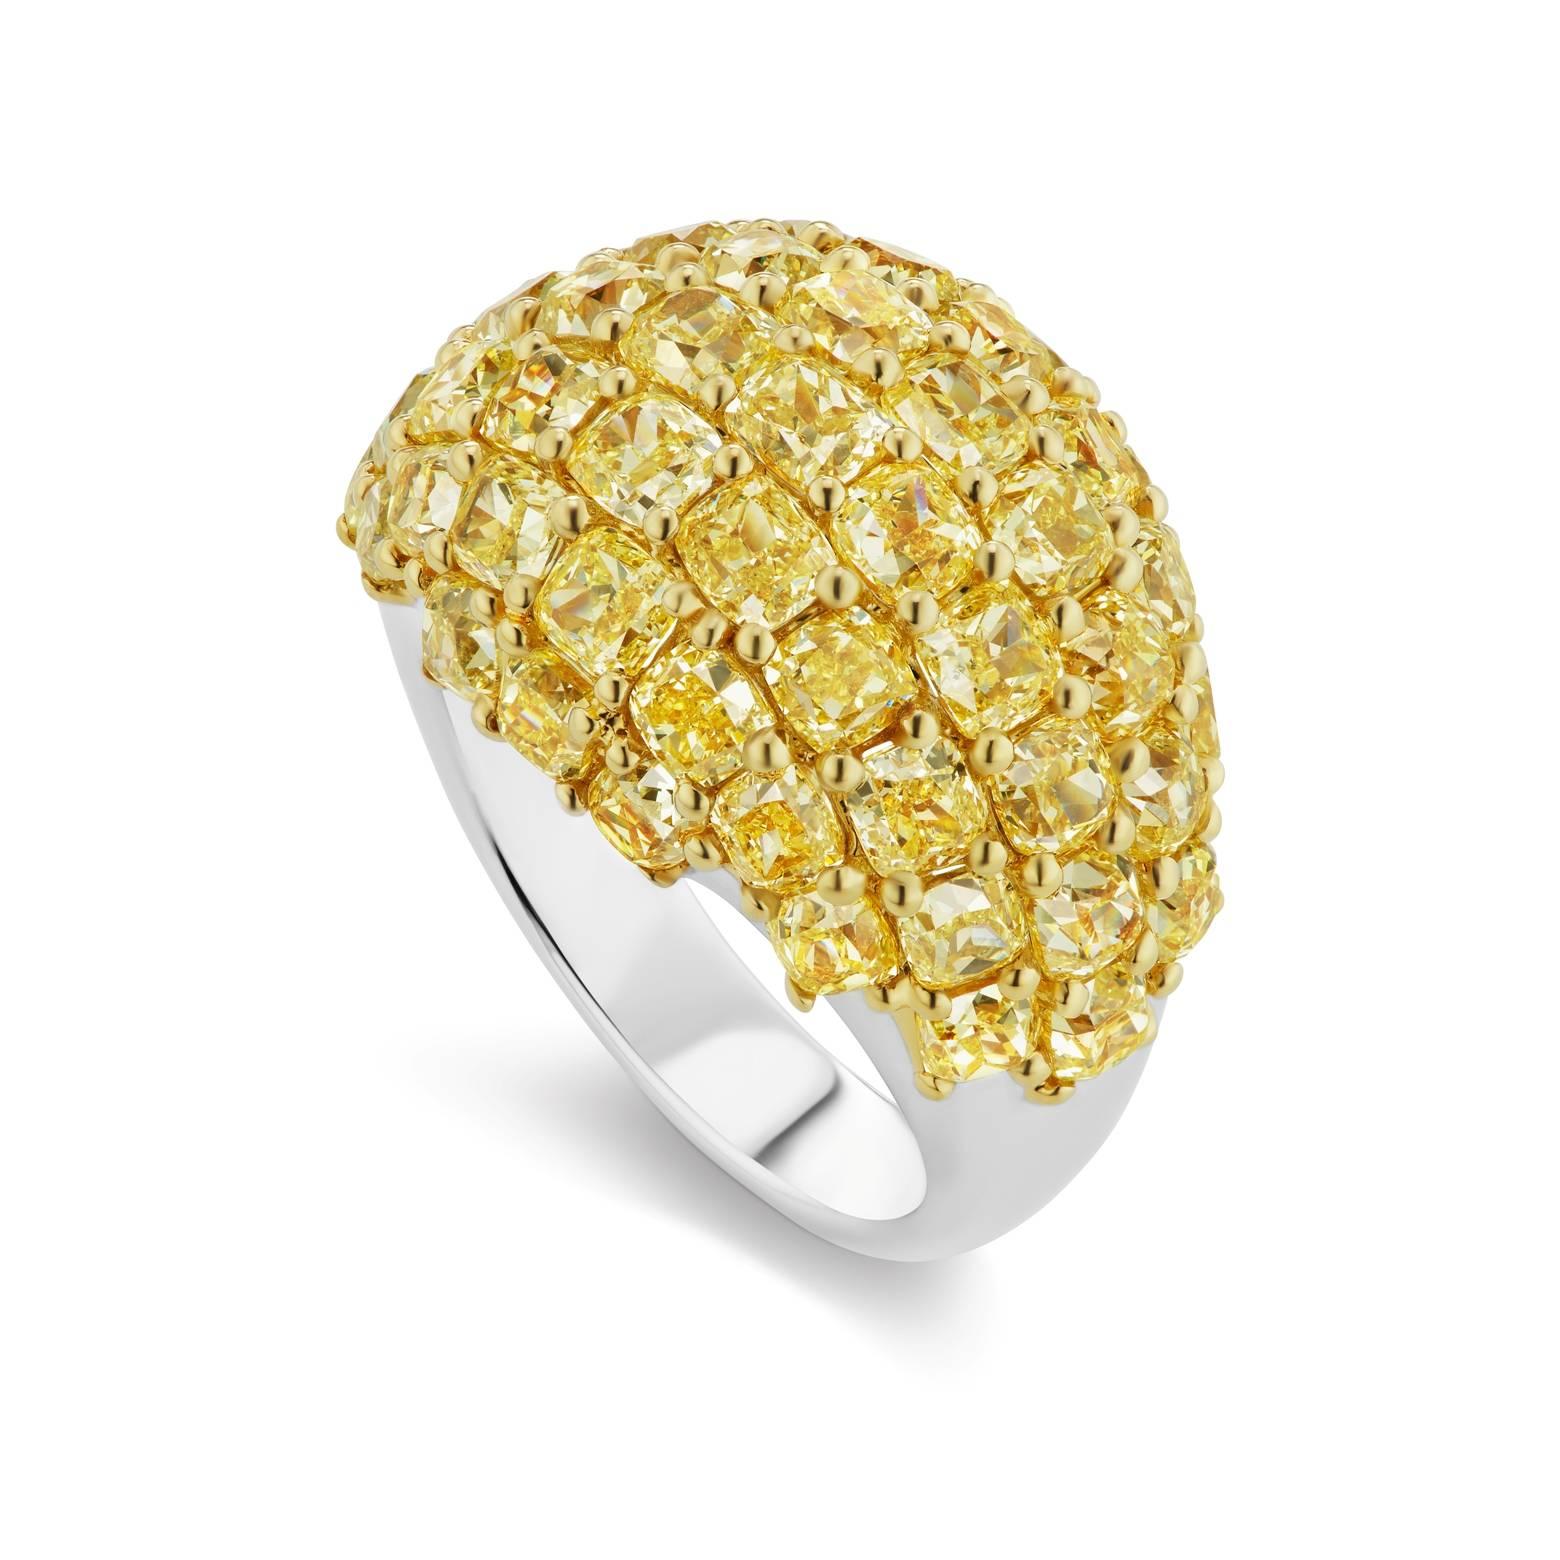 Dieser außergewöhnliche Kuppelring von Scarselli ist mit 51 Diamanten mit Fancy Yellow Cushion Cut und hoher Reinheit von insgesamt 8,22 Karat in 18 Karat Gelb- und Weißgold gefasst. Dieser Ring ist extrem gut verarbeitet, um eine lange Lebensdauer